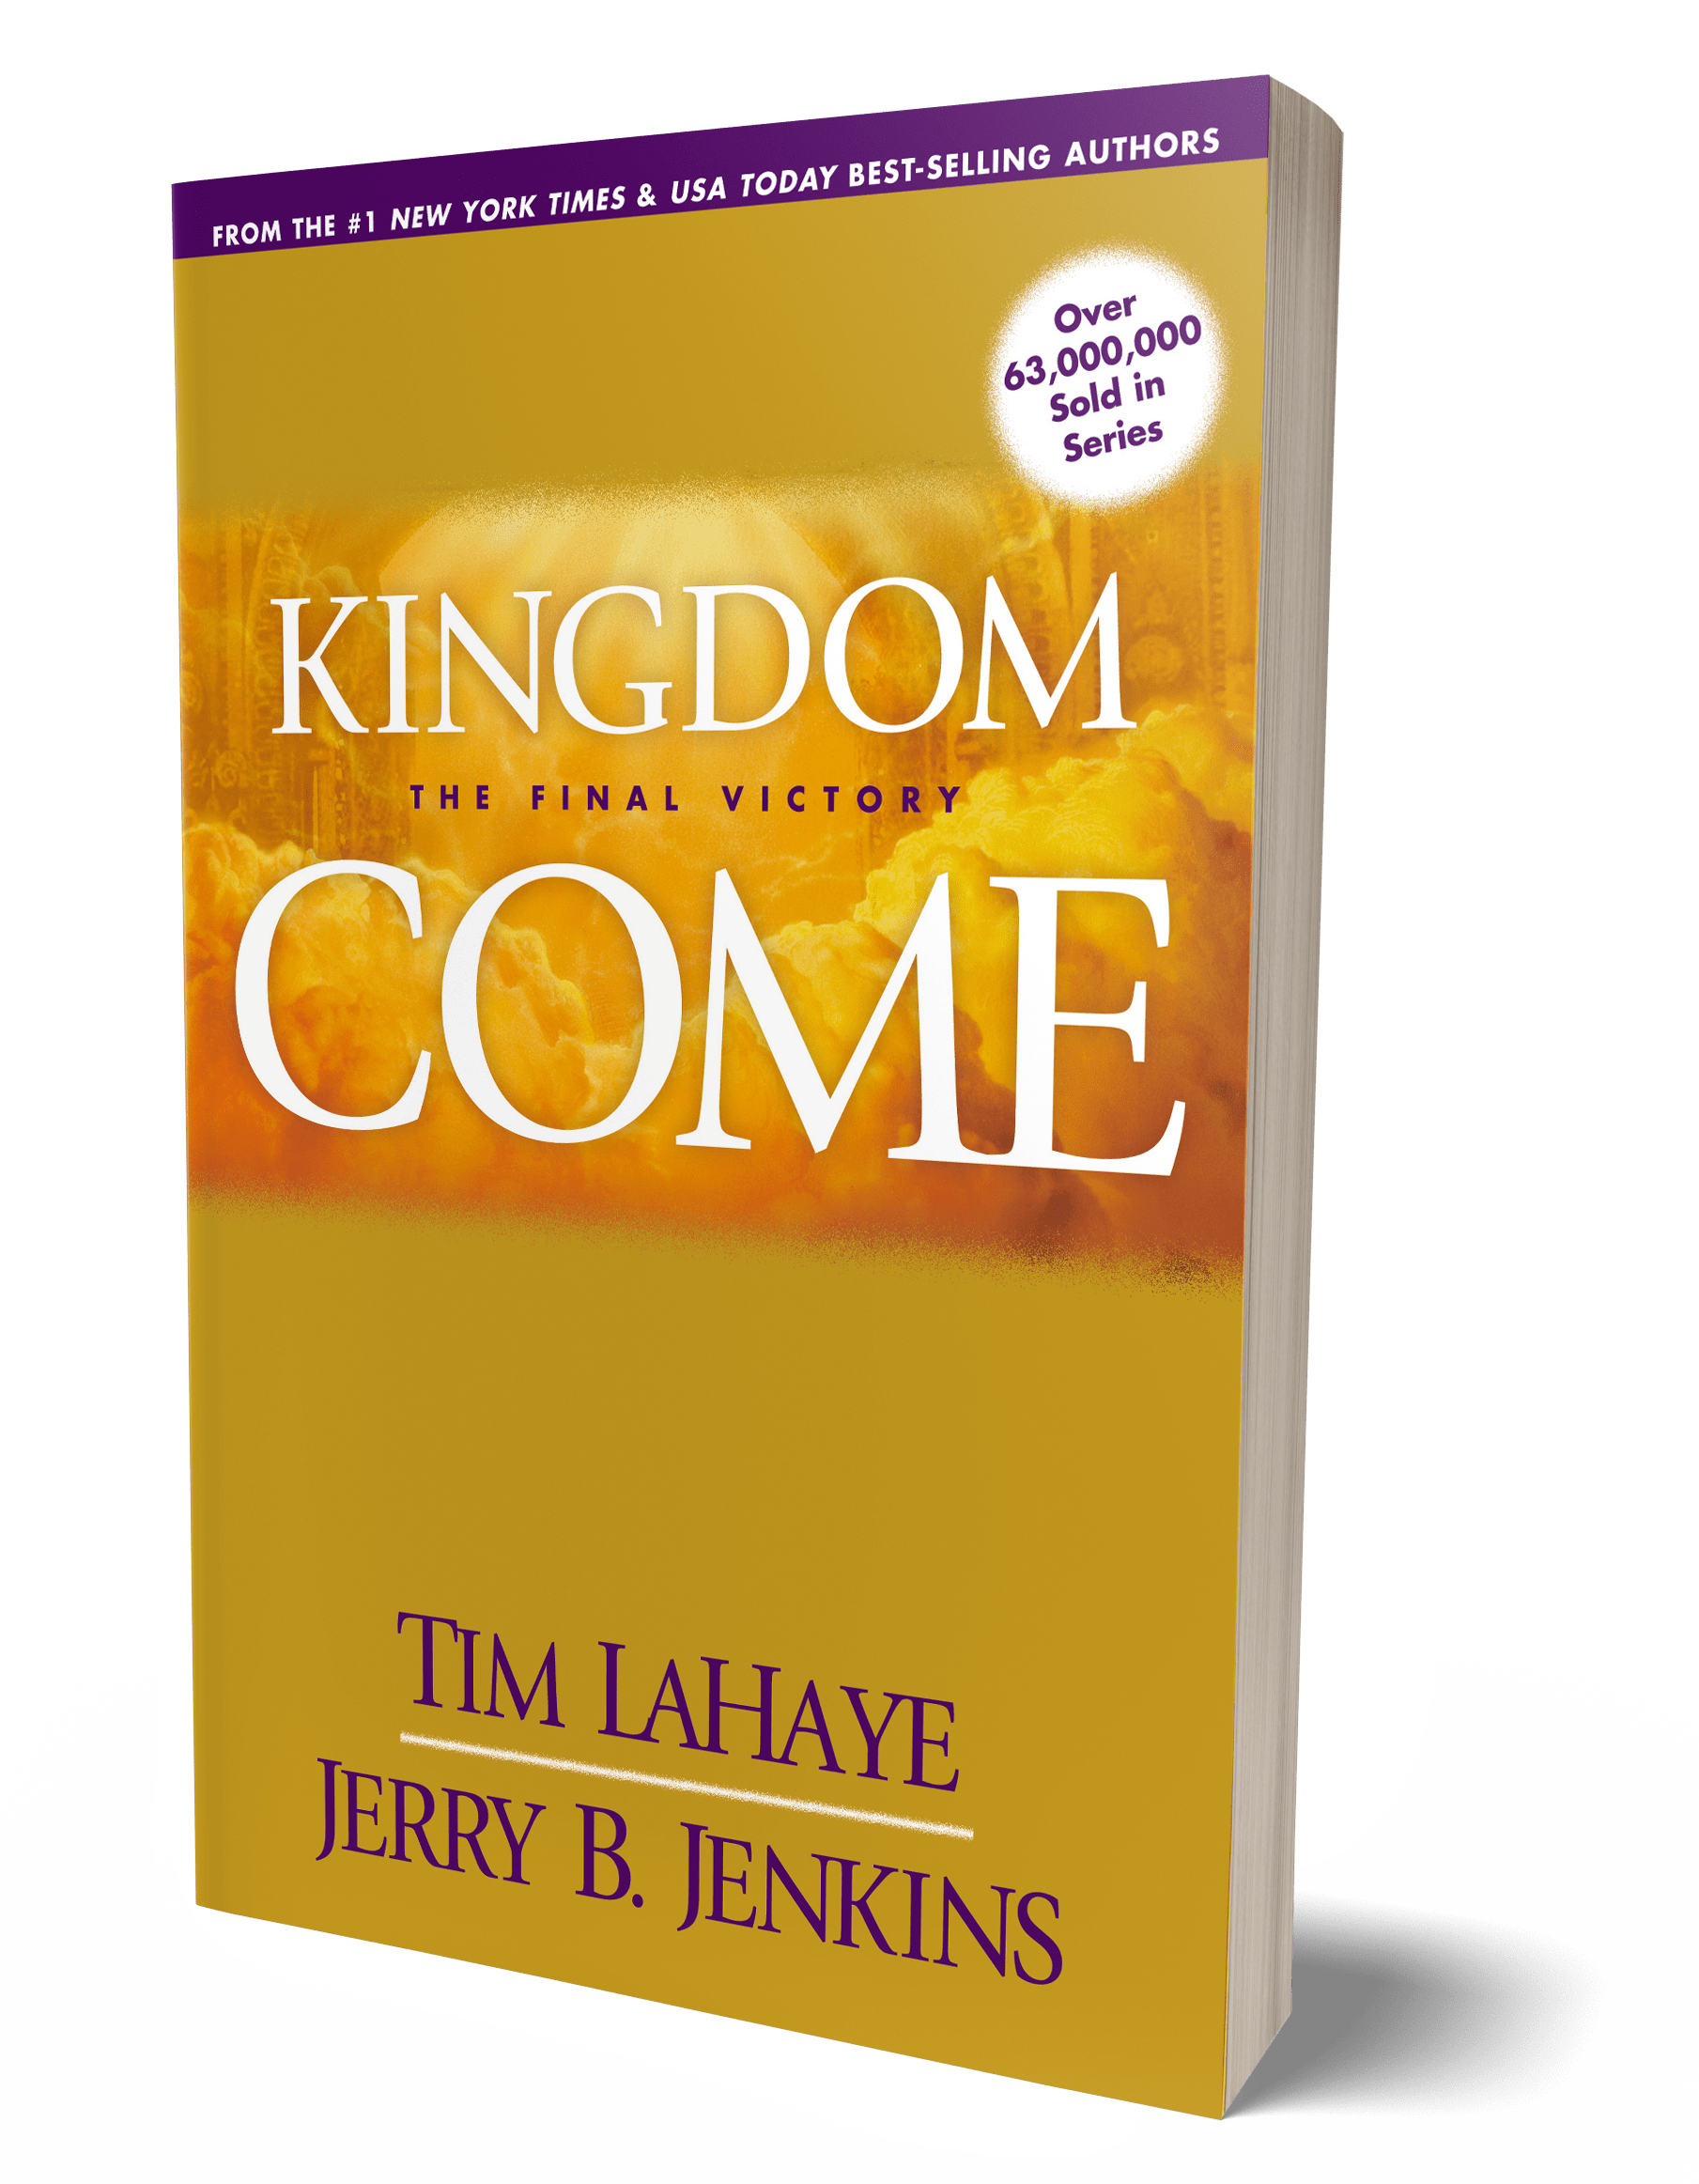 Kingdome Come book